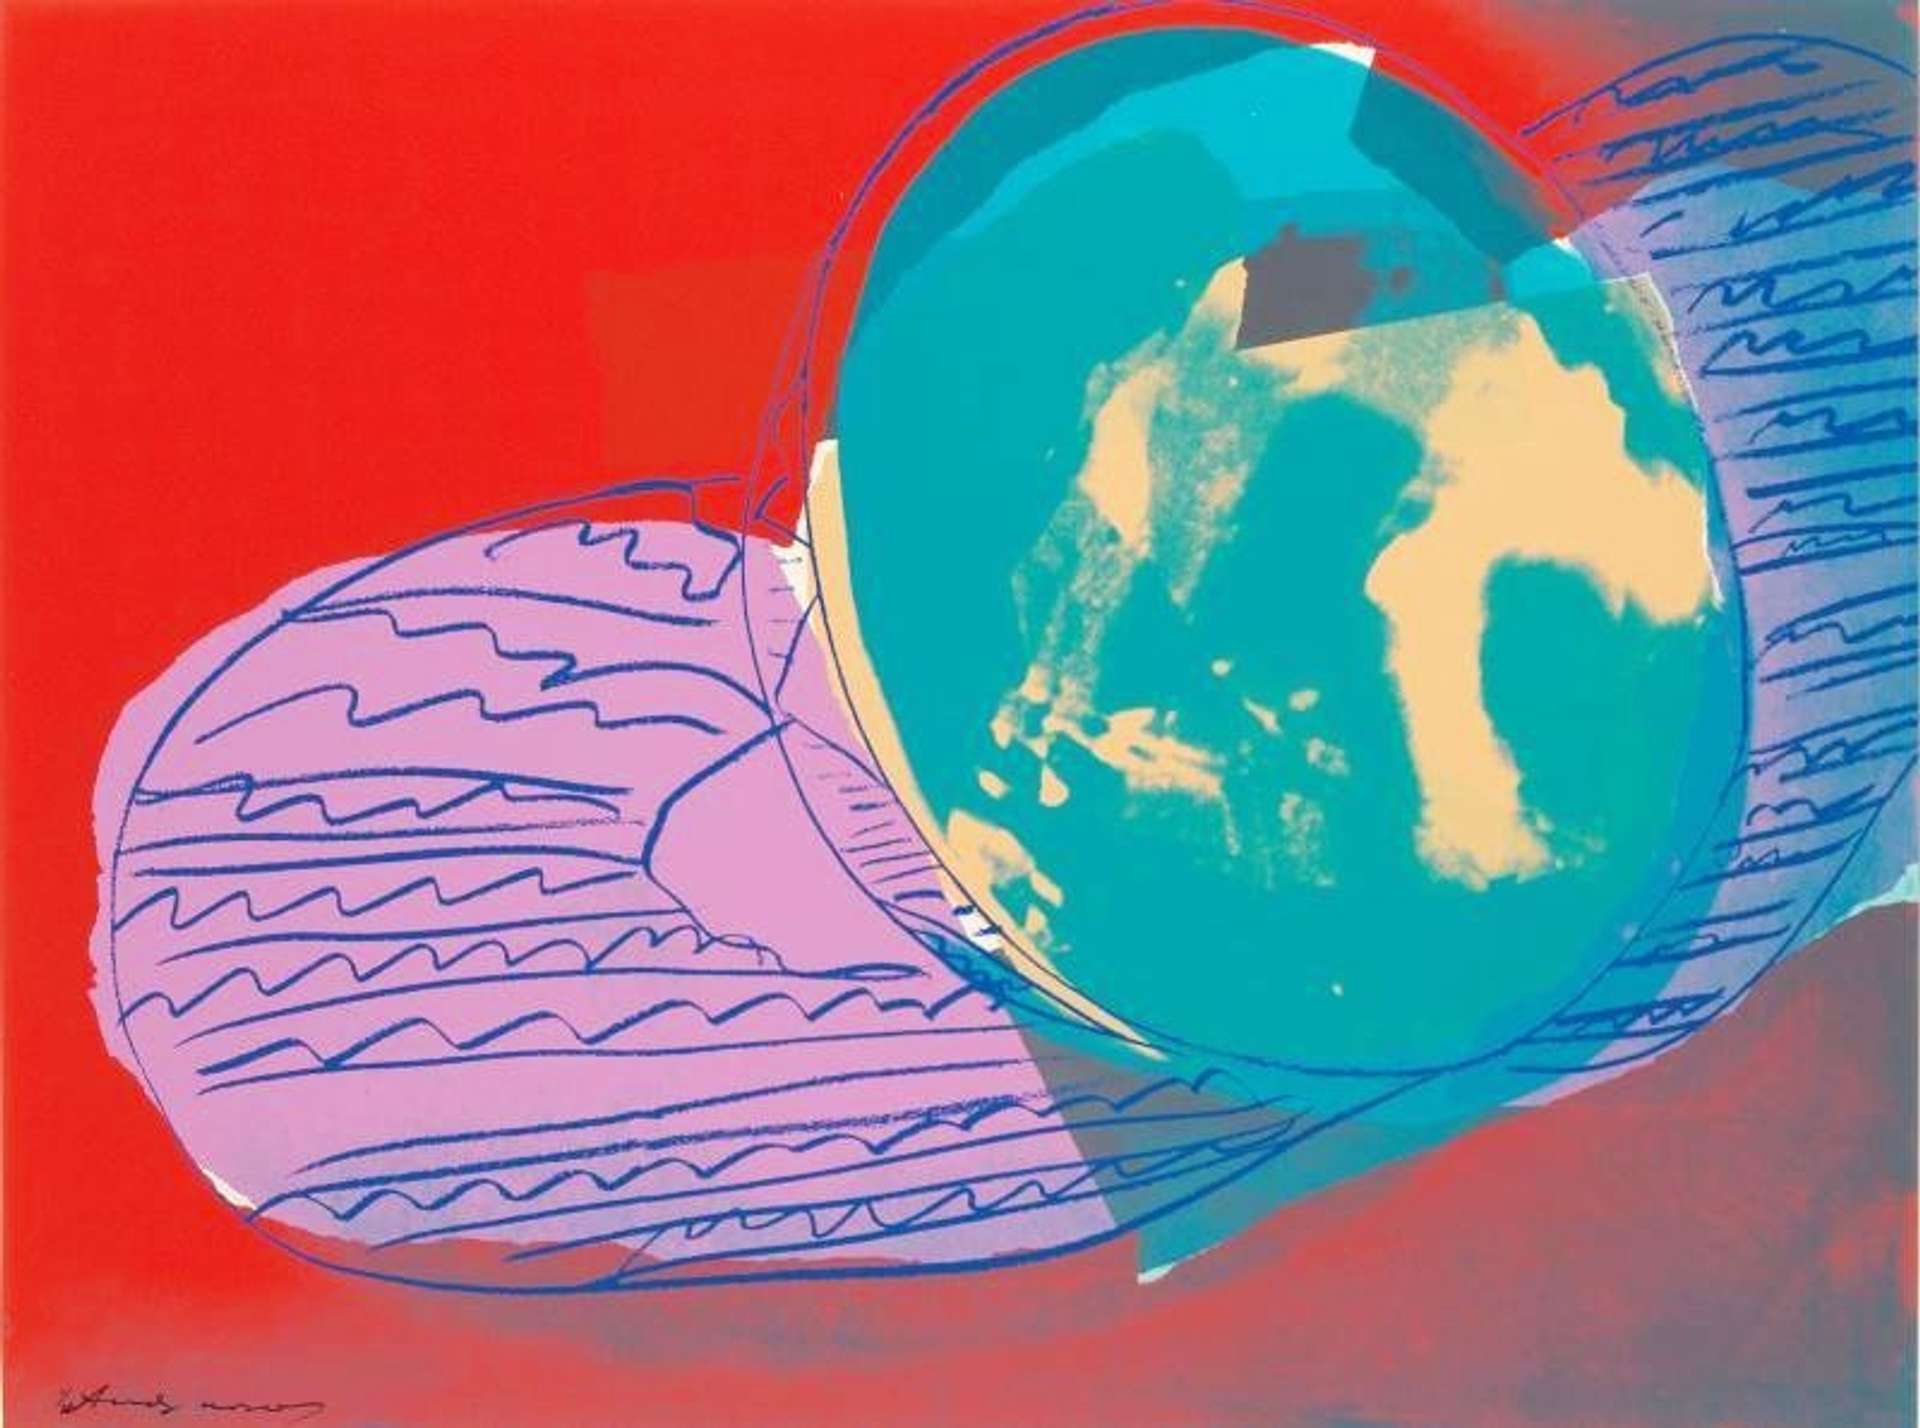 Gems (F. & S. II.86) by Andy Warhol